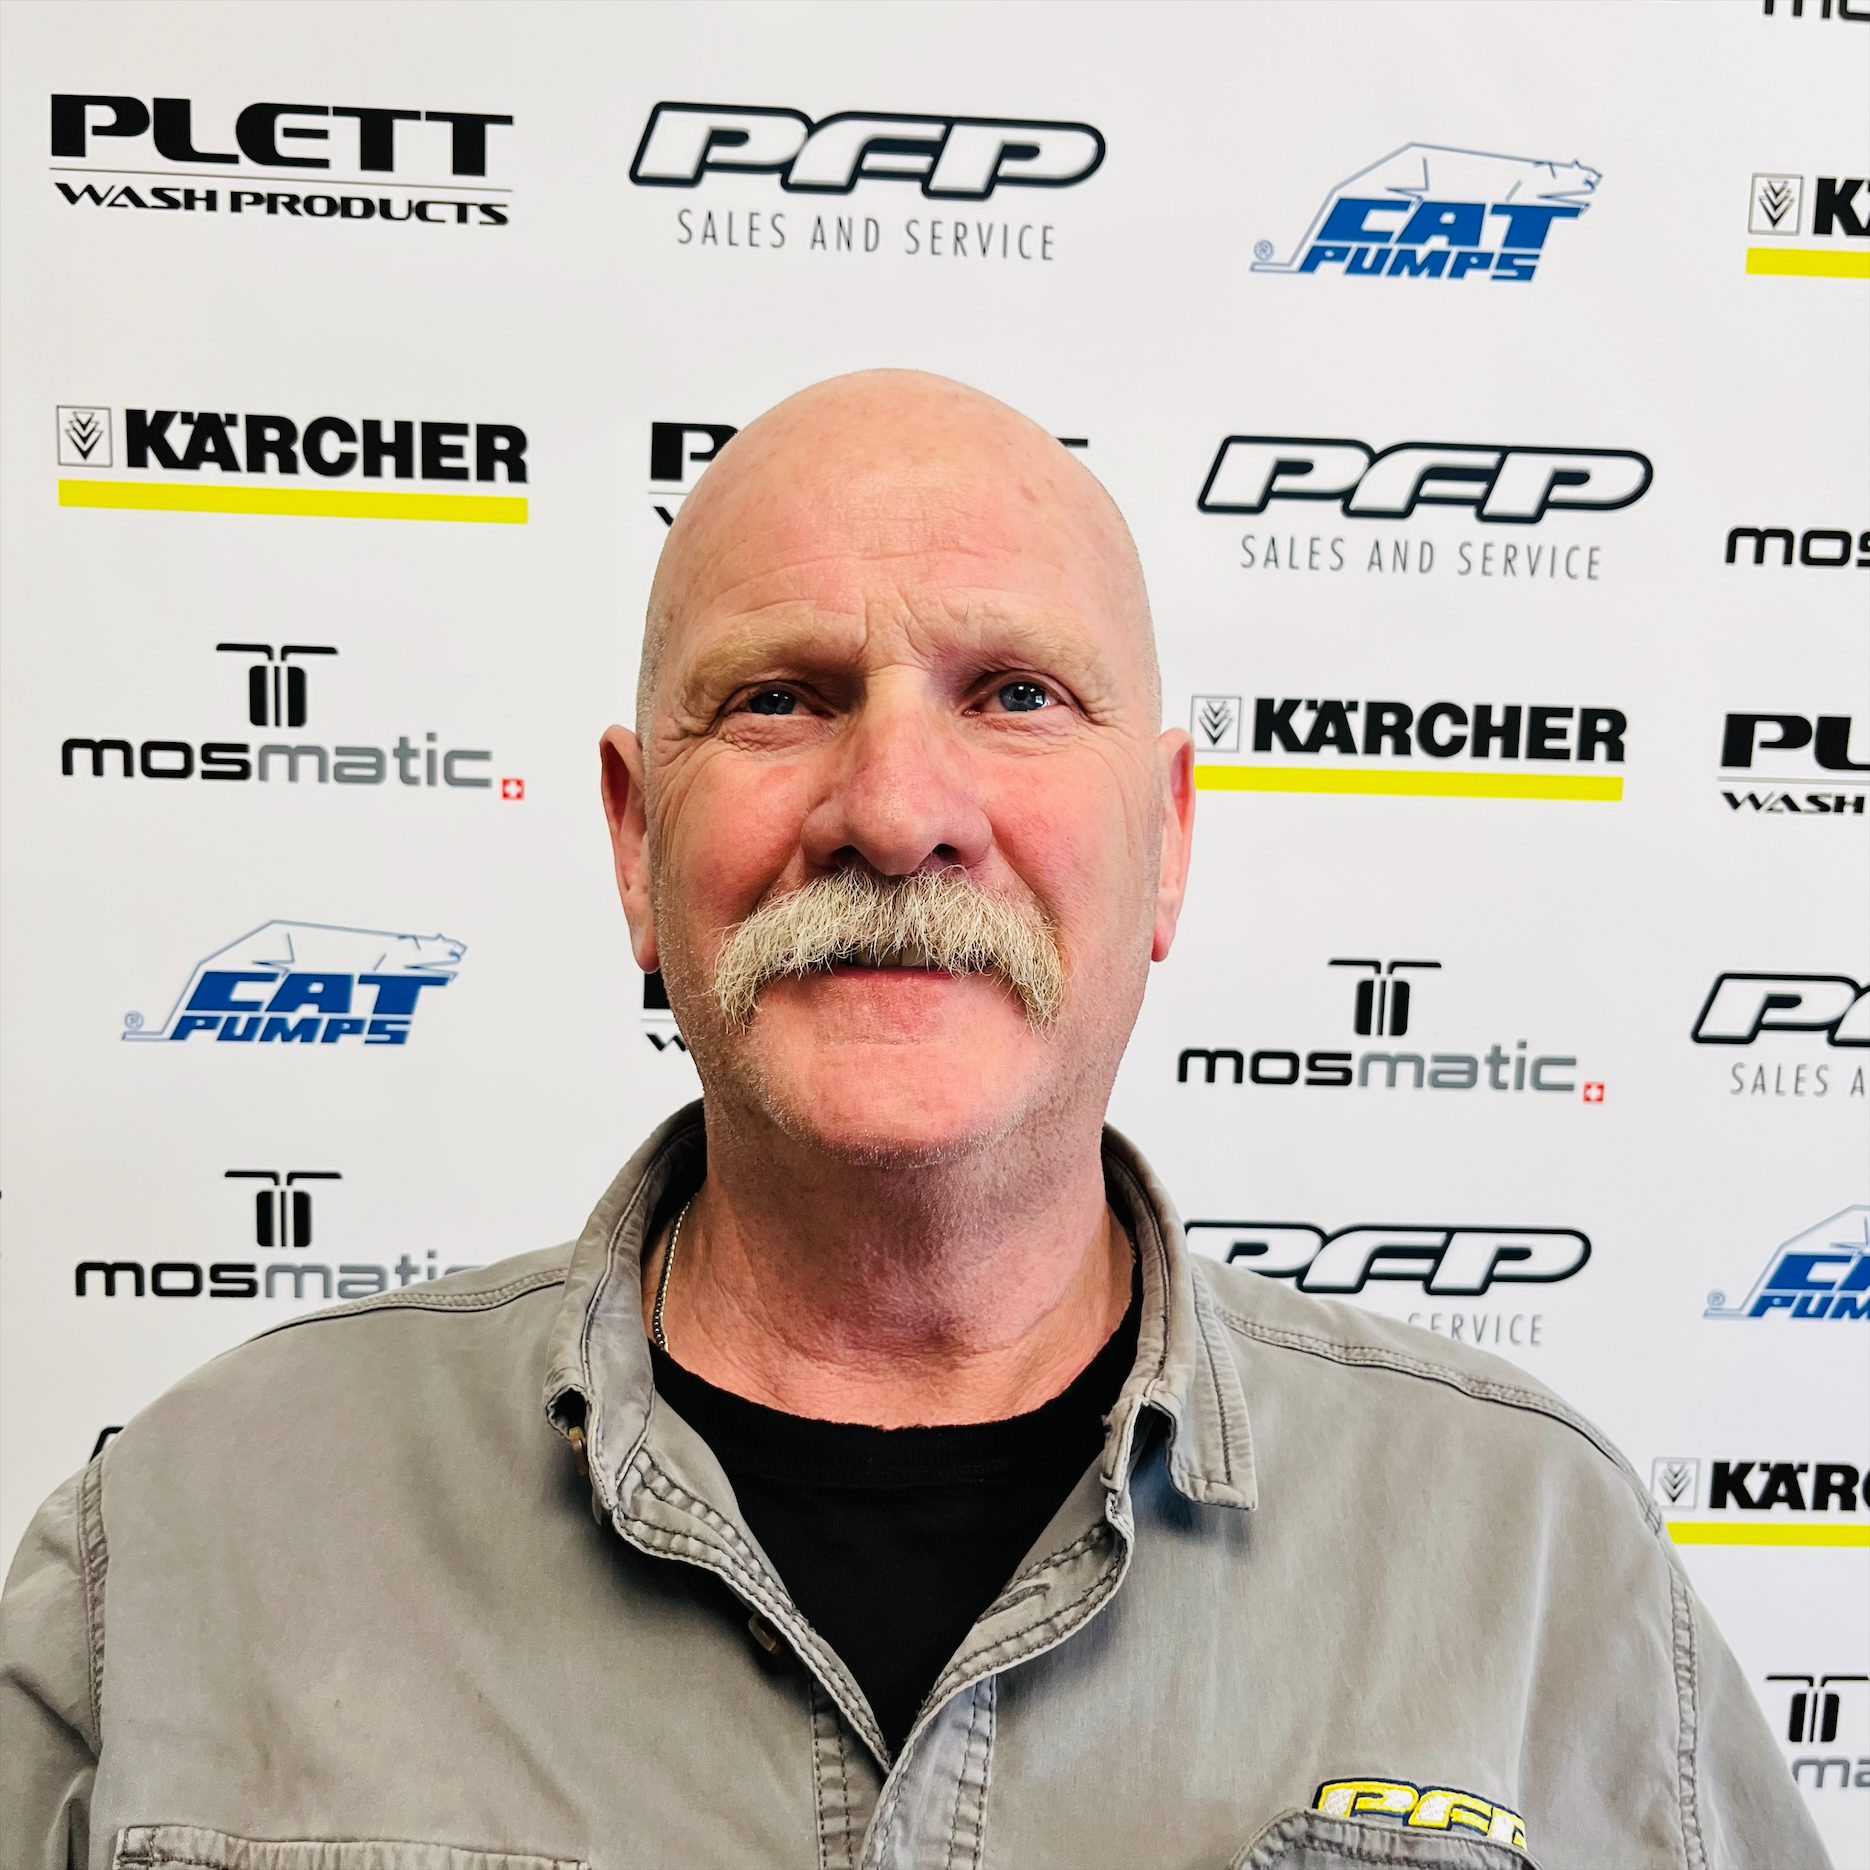 Robert Plett - Shop Manager/Owner